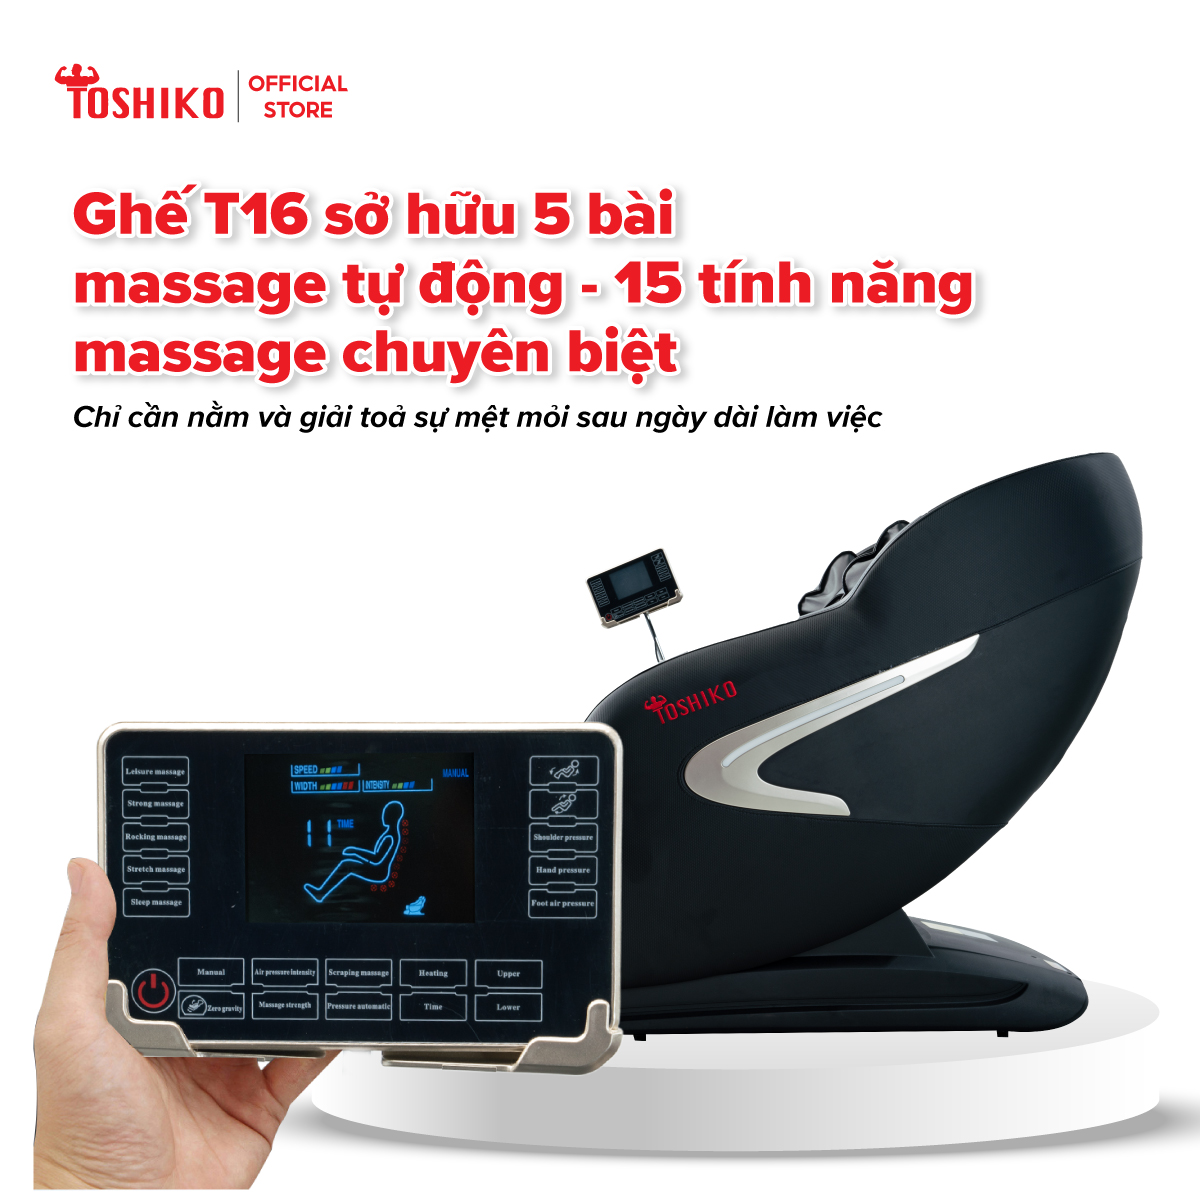 [Nhận hàng được nằm thử] Ghế Massage Toàn Đa Năng Toshiko T16 -  Sở hữu con lăn 4D massage di chuyển, Ghế Matxa Toàn Thân Cao Cấp công nghệ AI với chức năng tự động mát xa đa năng, sở hữu hệ thống mát xa nhiệt